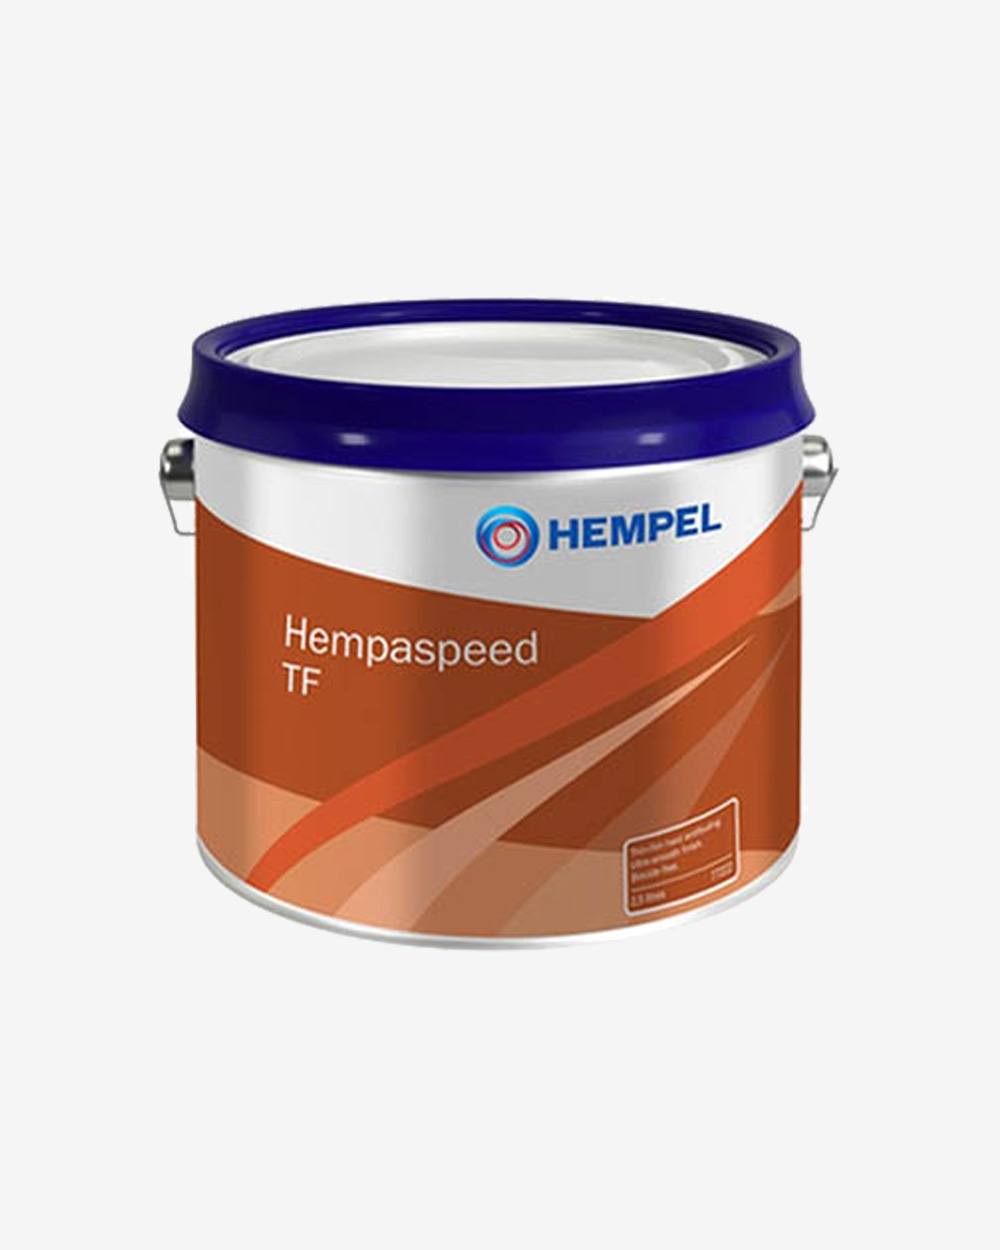 Se Hempel Hempaspeed True Blue - 0,75 liter hos Picment.dk